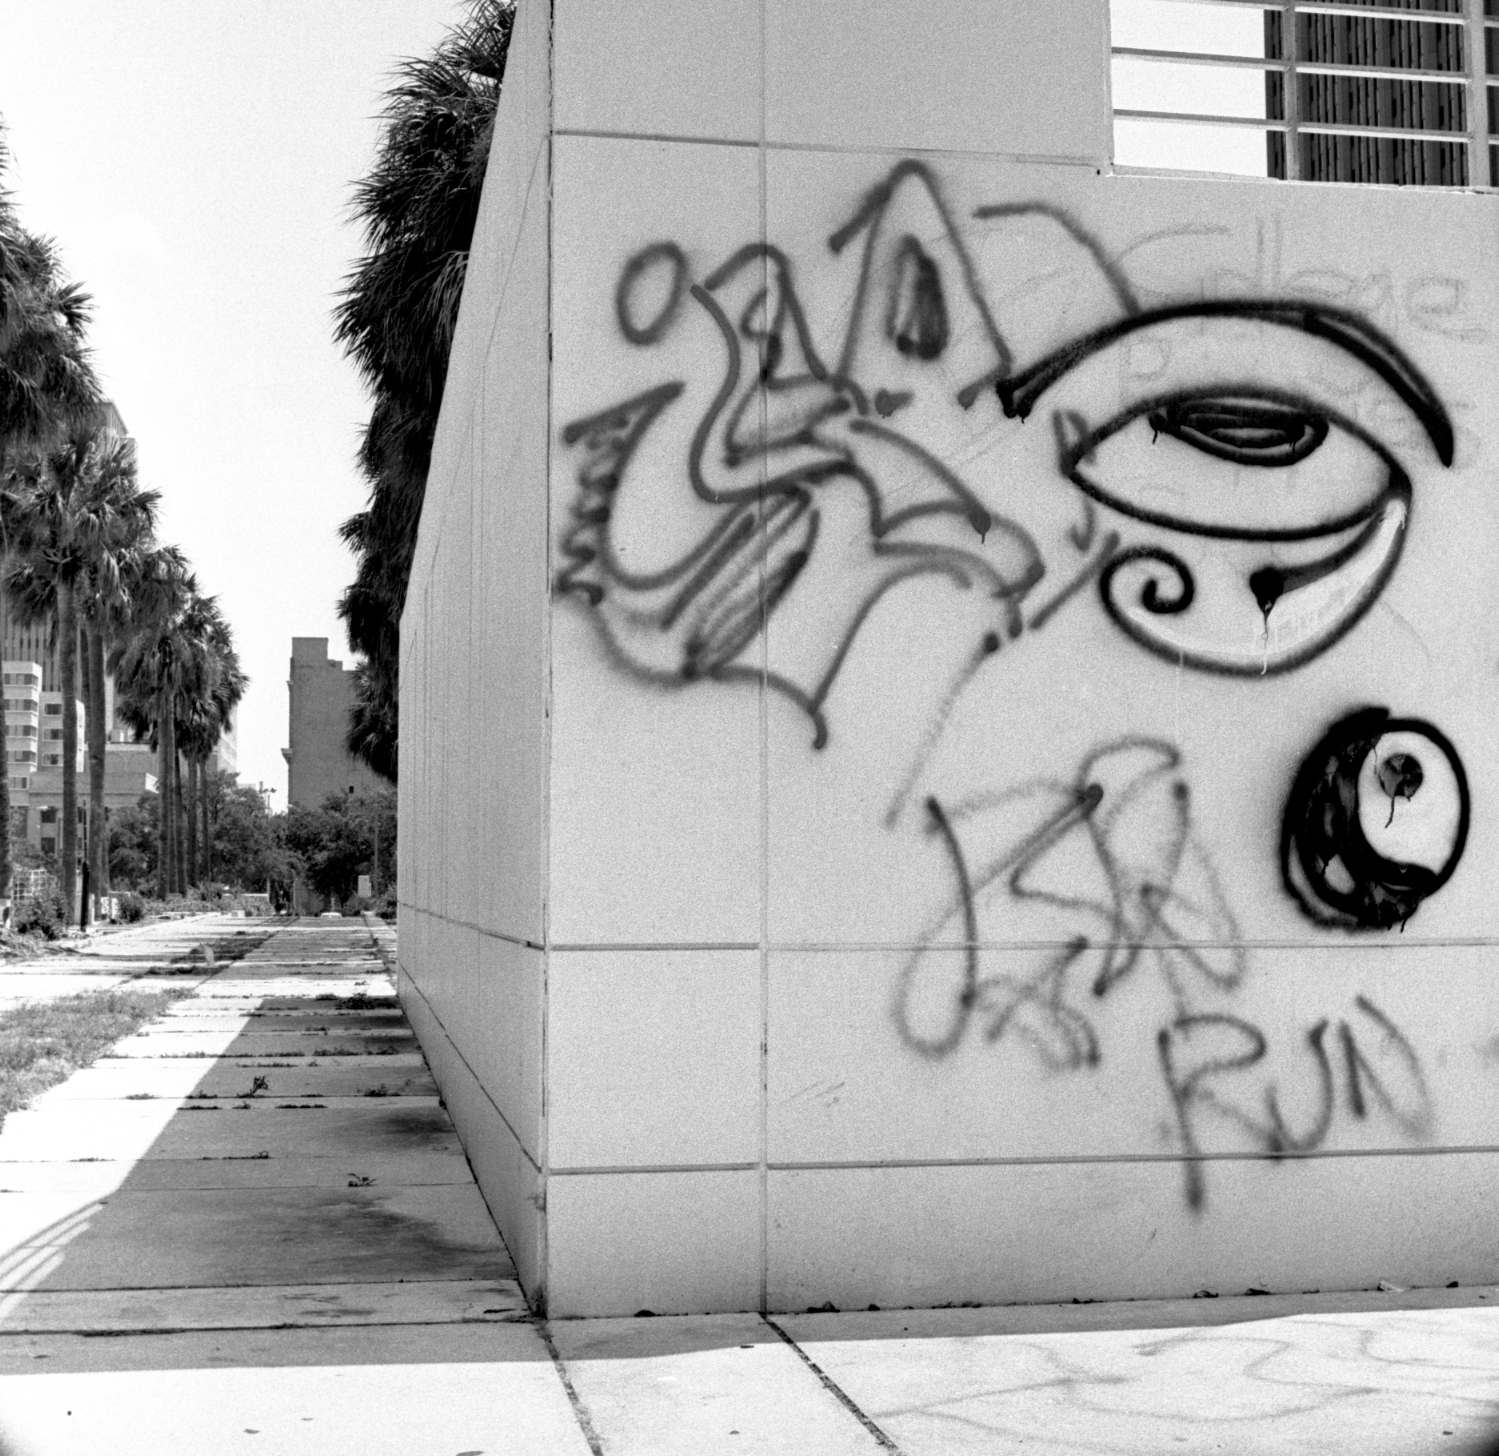 Tampa Museum of Art Graffiti 